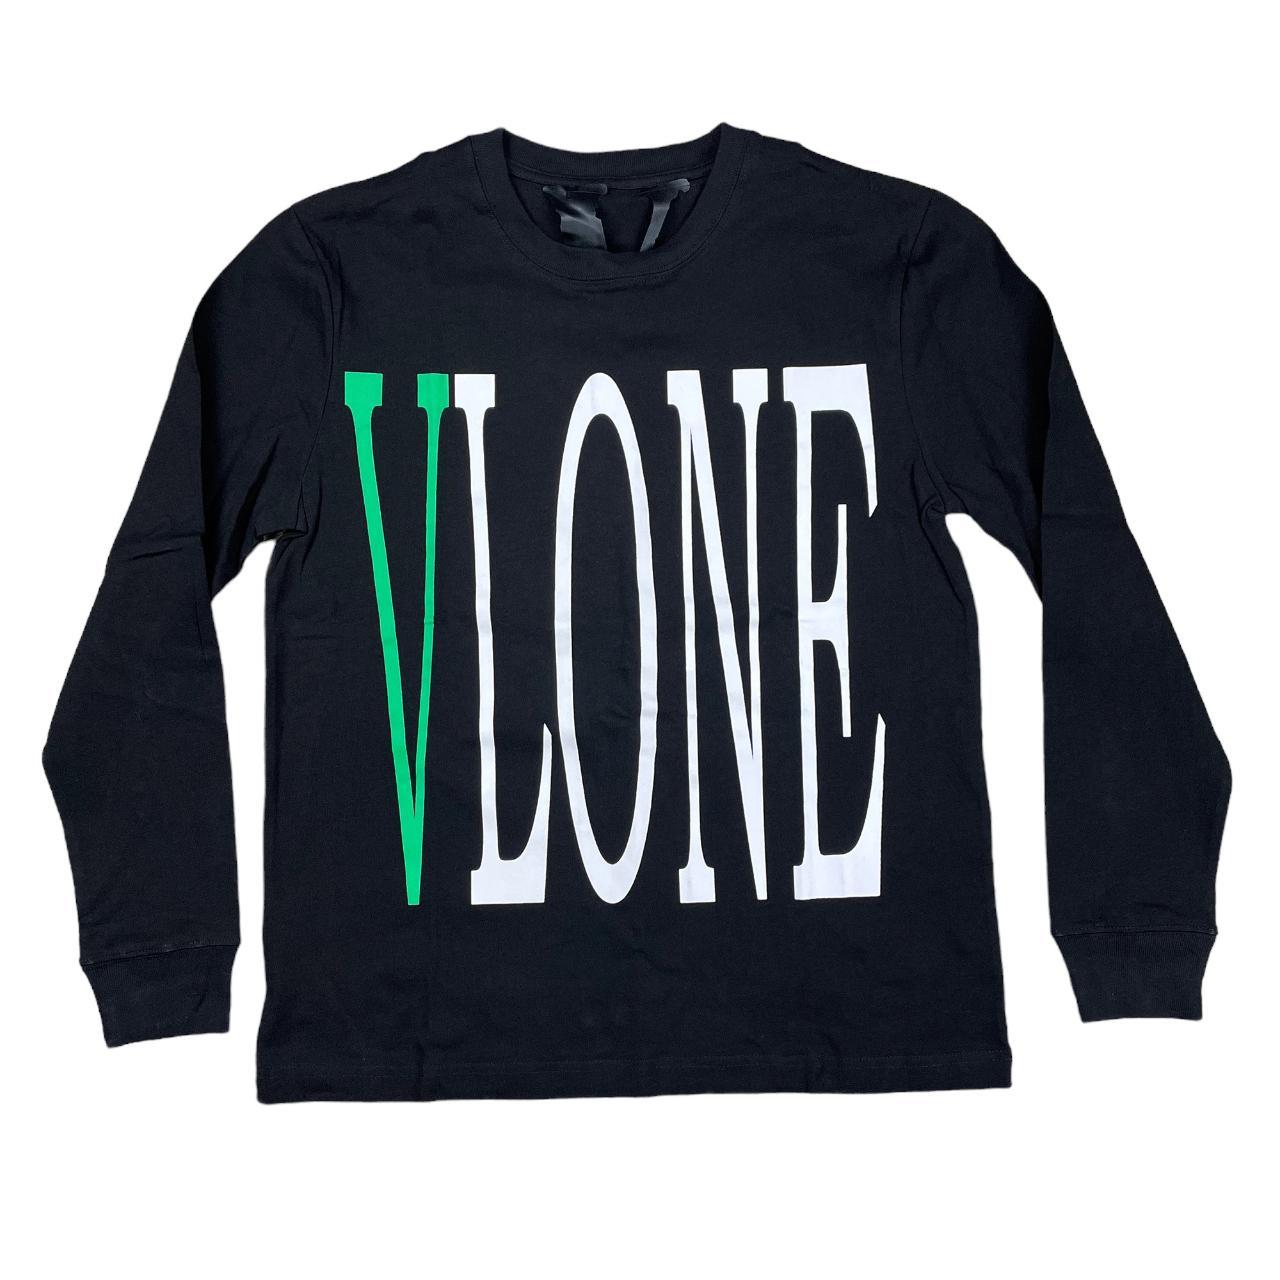 VLONE Staple OG Long Sleeve T-shirt Black Green u0026...